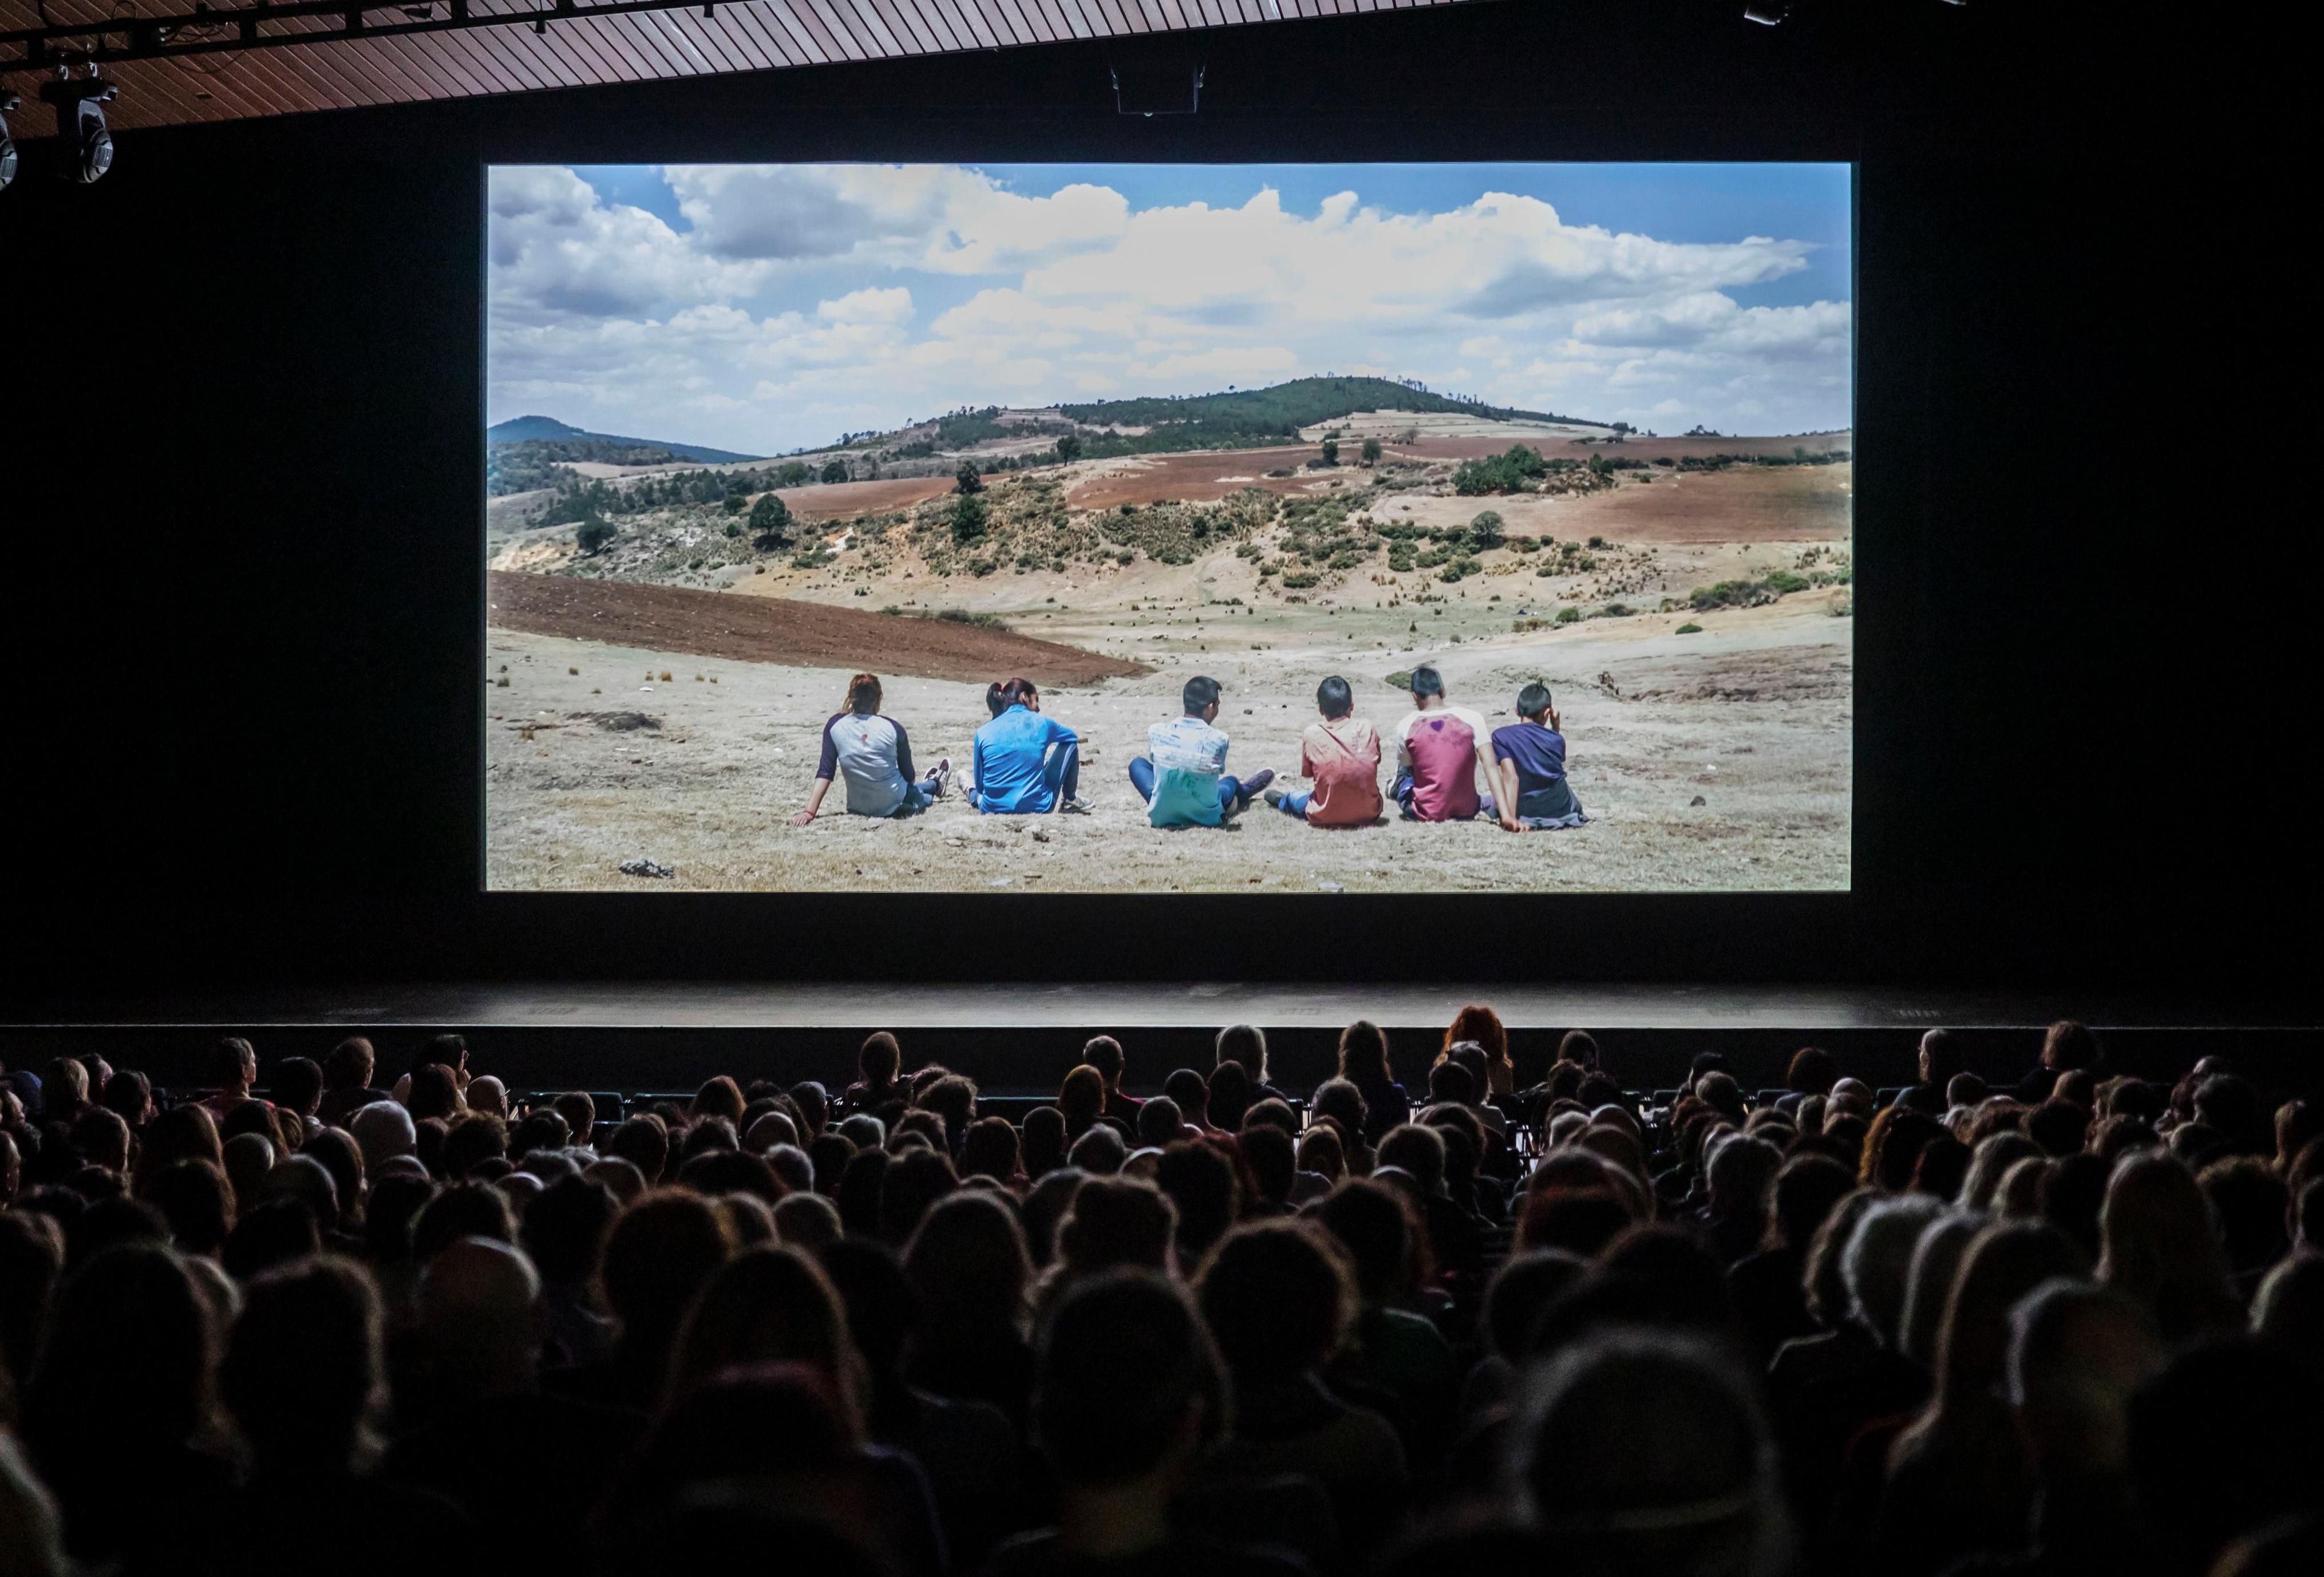 Der Kinosaal der Akademie der Künste mit Publikum. Auf der Leinwand ist der Film El eco zu sehen. Die Szene zeigt eine Gruppe Jugendlicher, die auf dem Boden in einer Prärie sitzen.